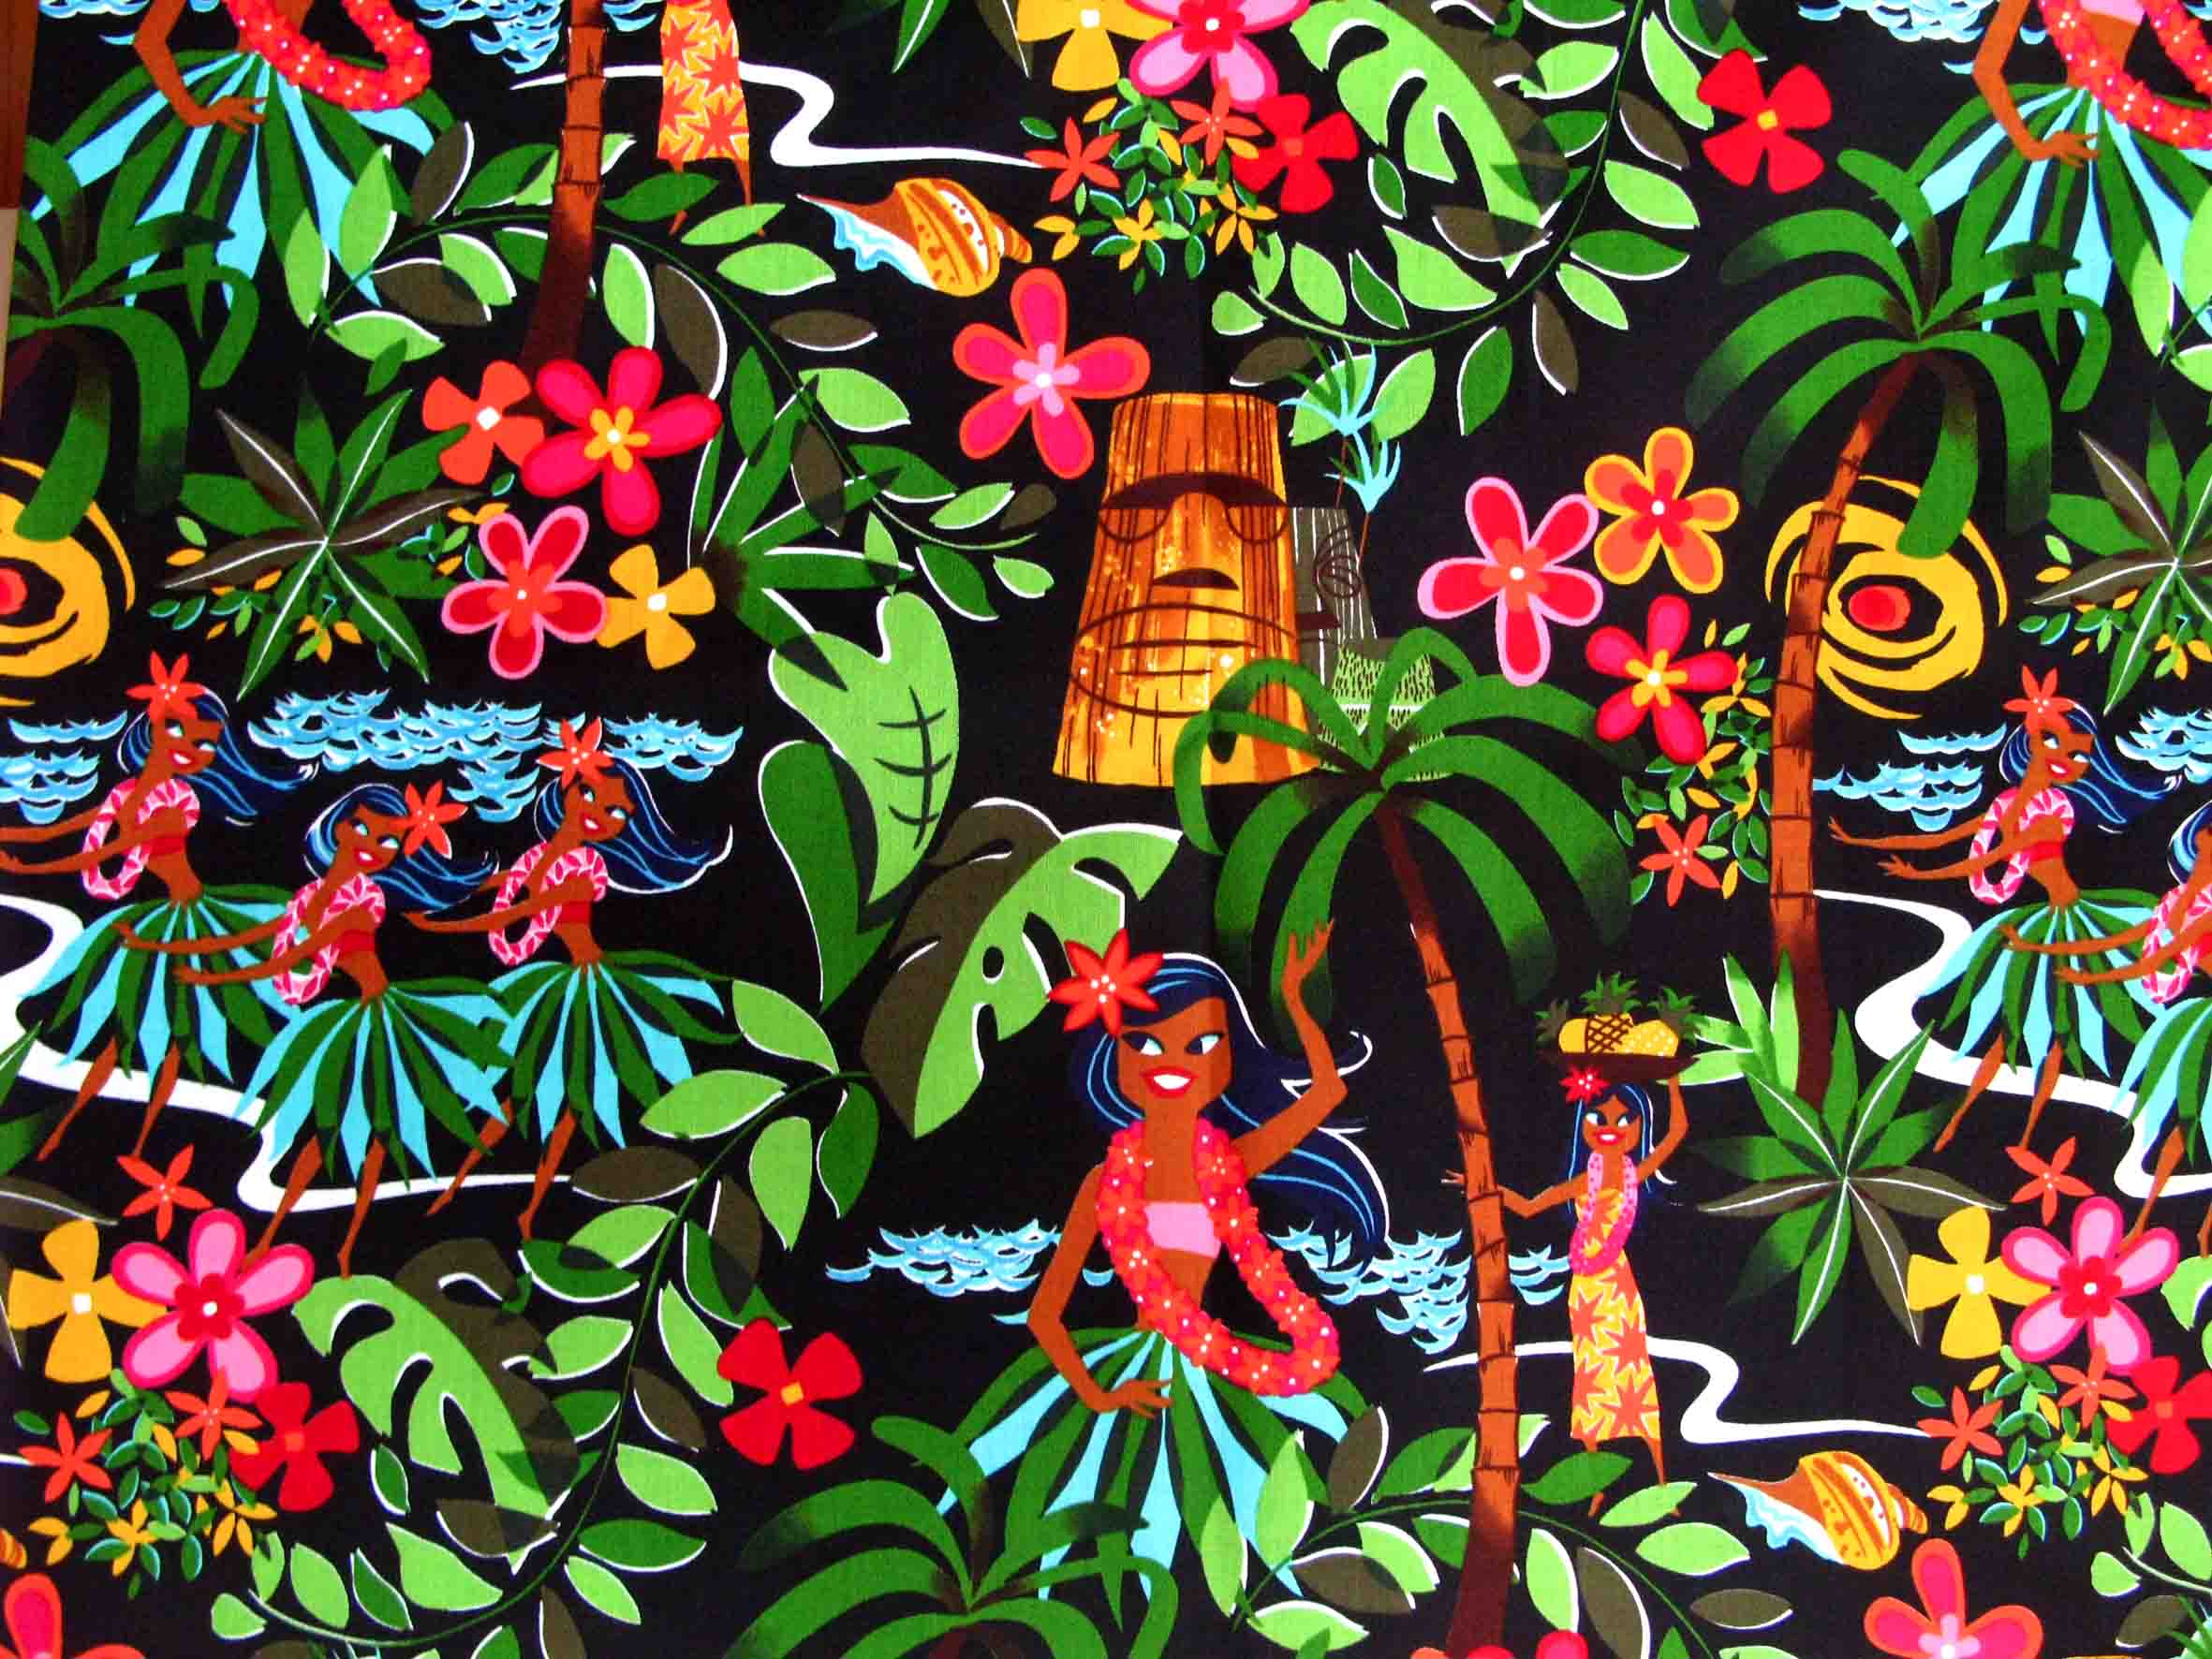 Aloha Wallpaper. Aloha Wallpaper, Aloha Hawaii Wallpaper and Walmart Aloha Wallpaper